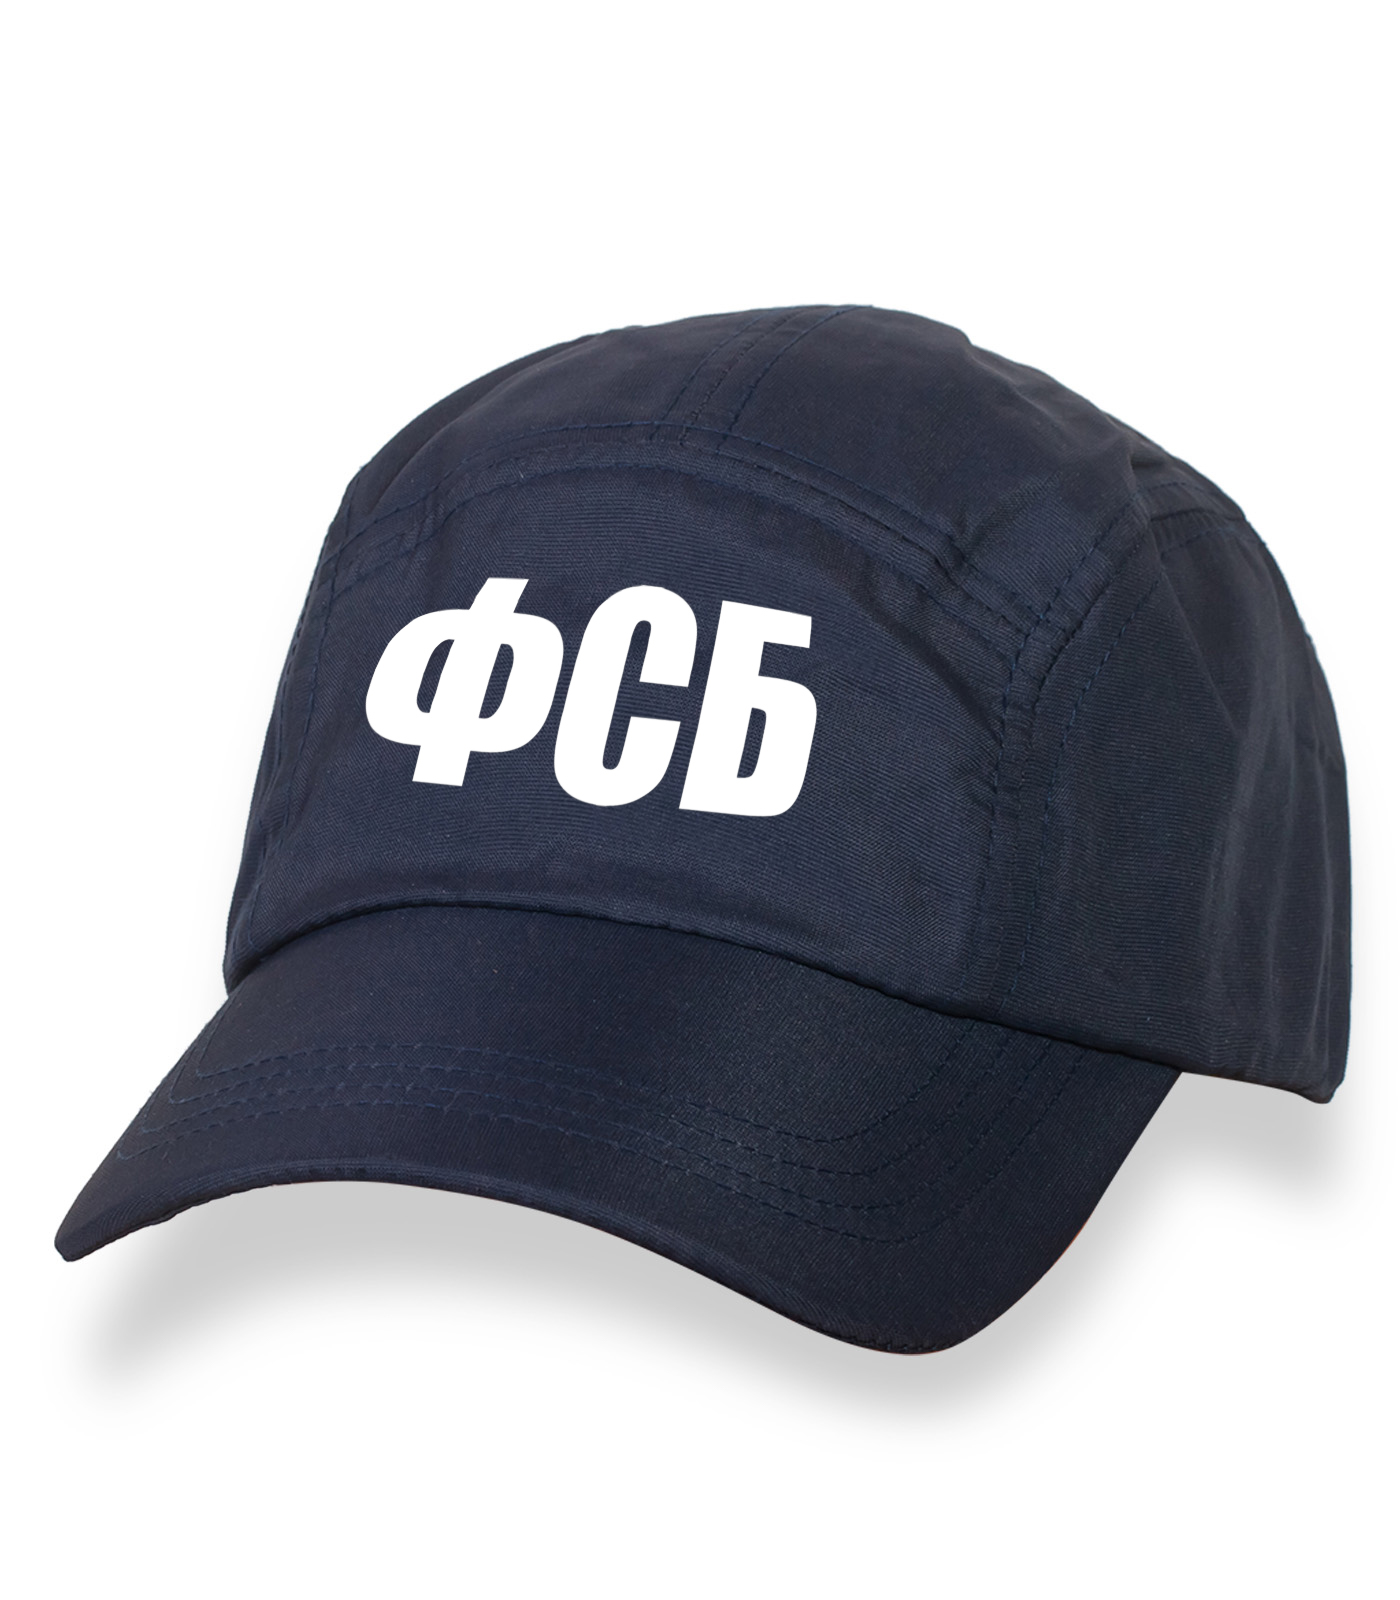 Темно-синяя крутая кепка-пятипанелька с термонаклейкой "ФСБ"  - ЛАКОНИЧНЫЙ  головной убор высокого качества по выгодной цене!